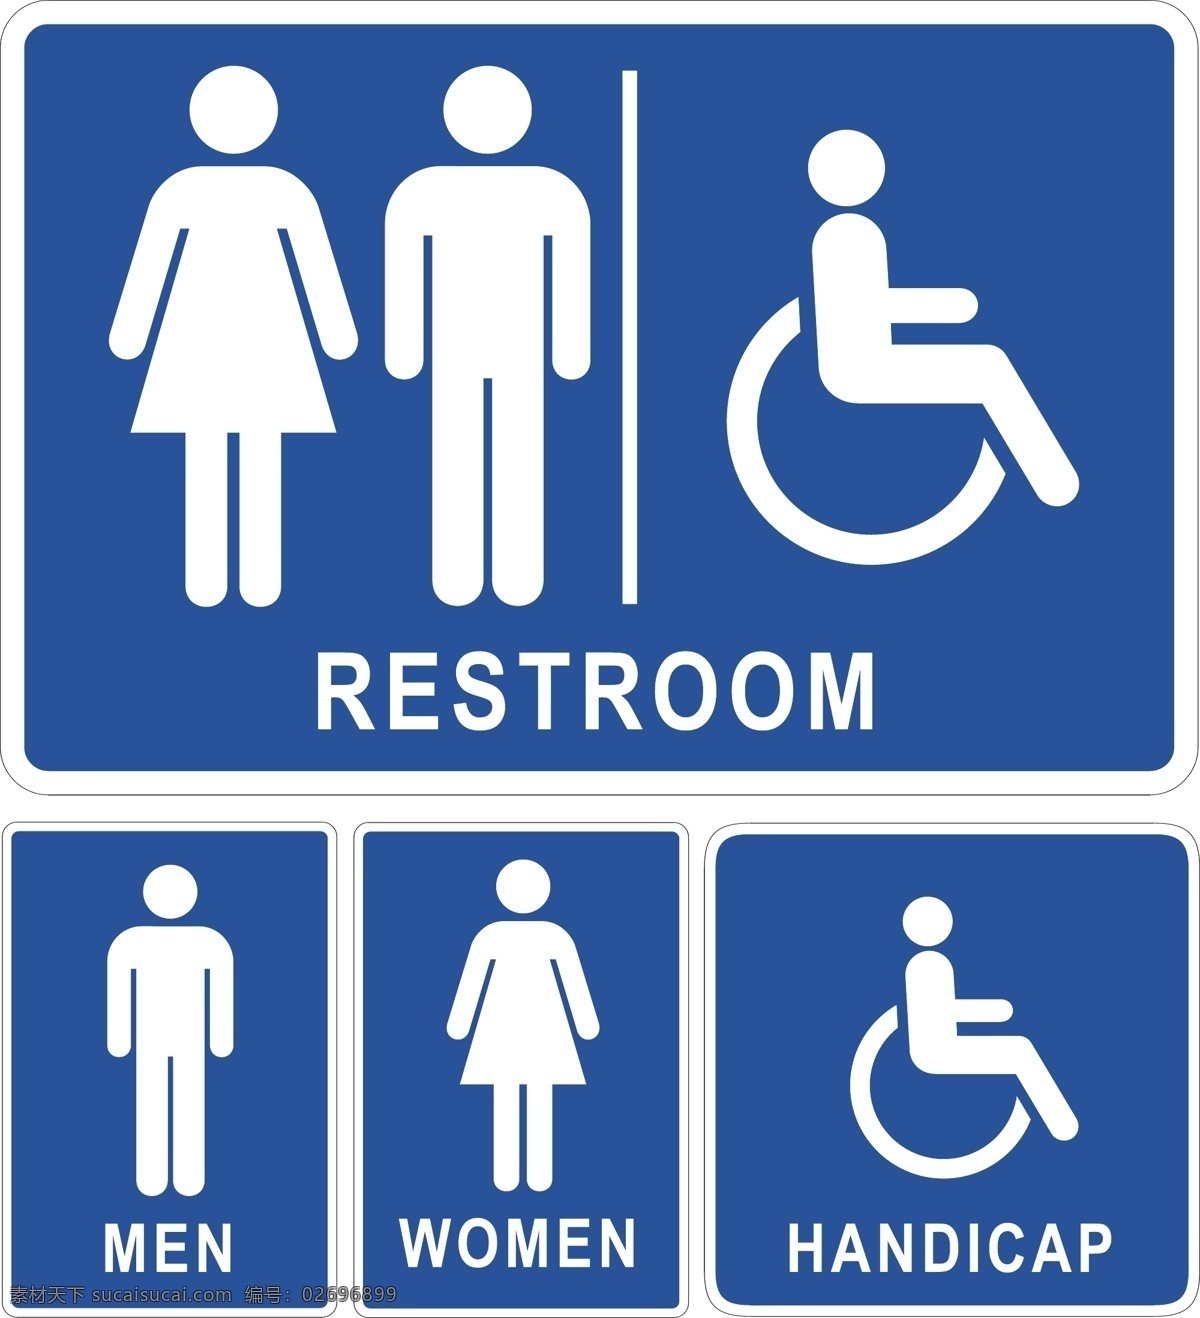 男女图标 男 女 男女 厕所 wc 男女符号 男性 女性 男性图标 女性图标 图标 标志 标签 logo 小图标 标识标志图标 矢量